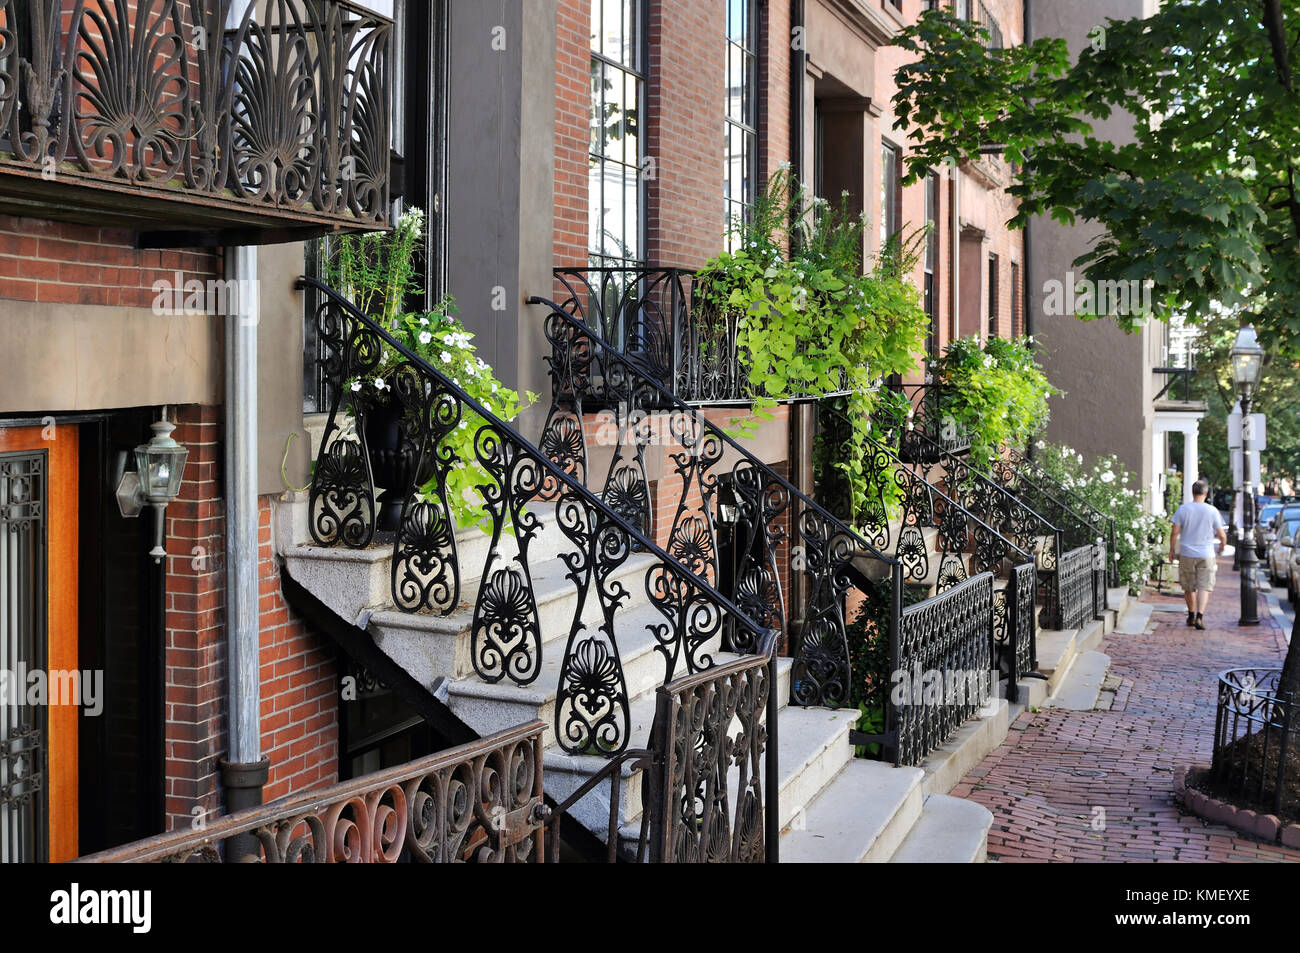 Beacon Hill, Boston. Les maisons en rangée en brique, trottoirs, clôtures en fer forgé, balcons et escaliers de pierre, les jardins urbains, les détails architecturaux Banque D'Images